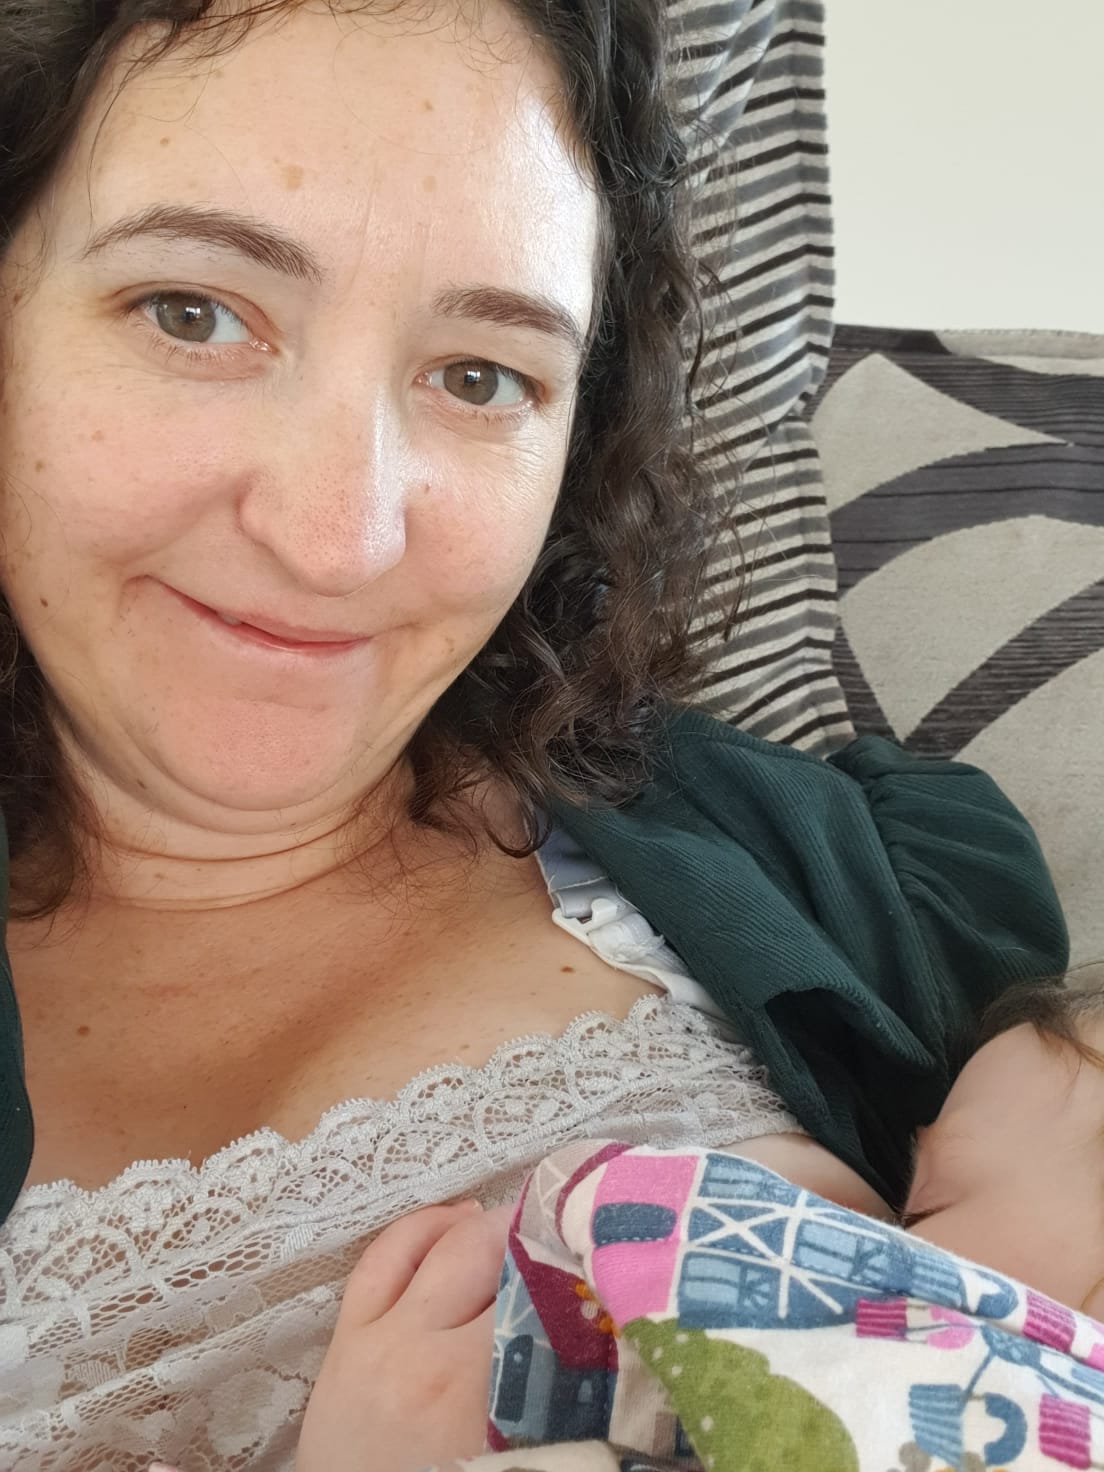 Extended Breastfeeding Reel goes Viral